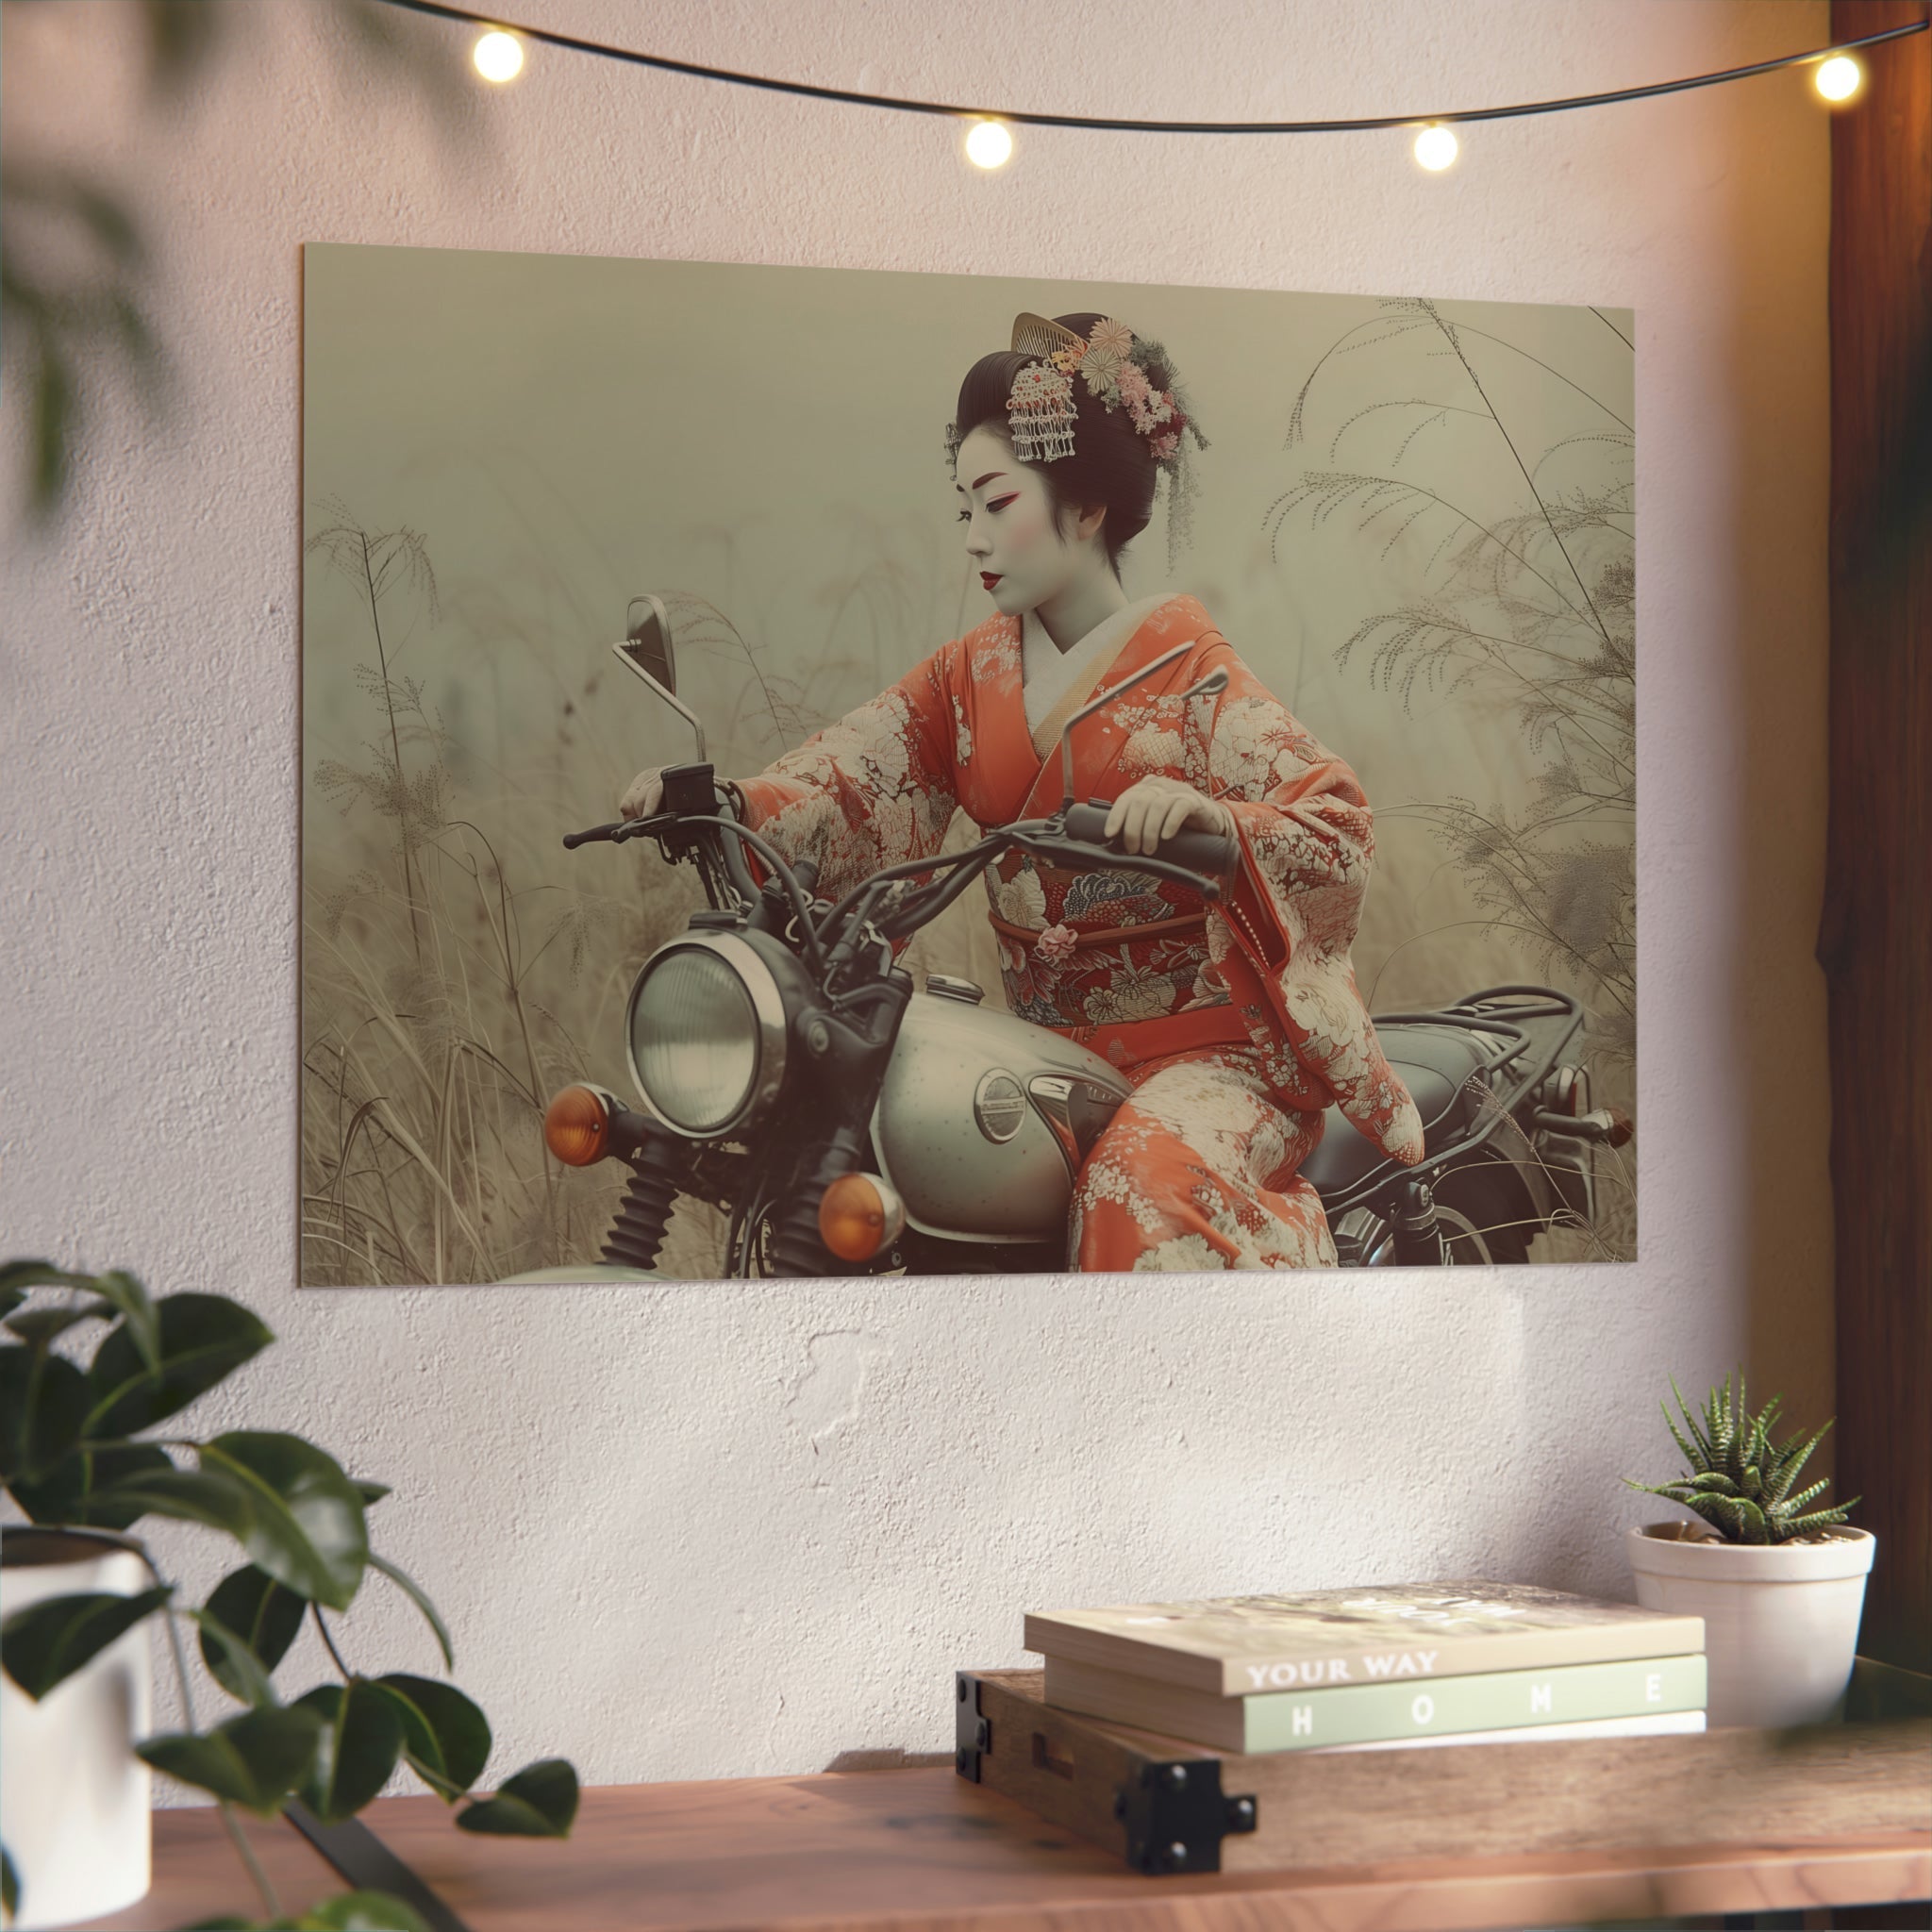 Motorrad-Art, Motorradbilder auf edlem premium Aluminium, Motorradfahrer, Bild auf Aluminium für Arbeitszimmer und Wohnzimmer, Motorradbild, erotische, futuristische und Manga Motive